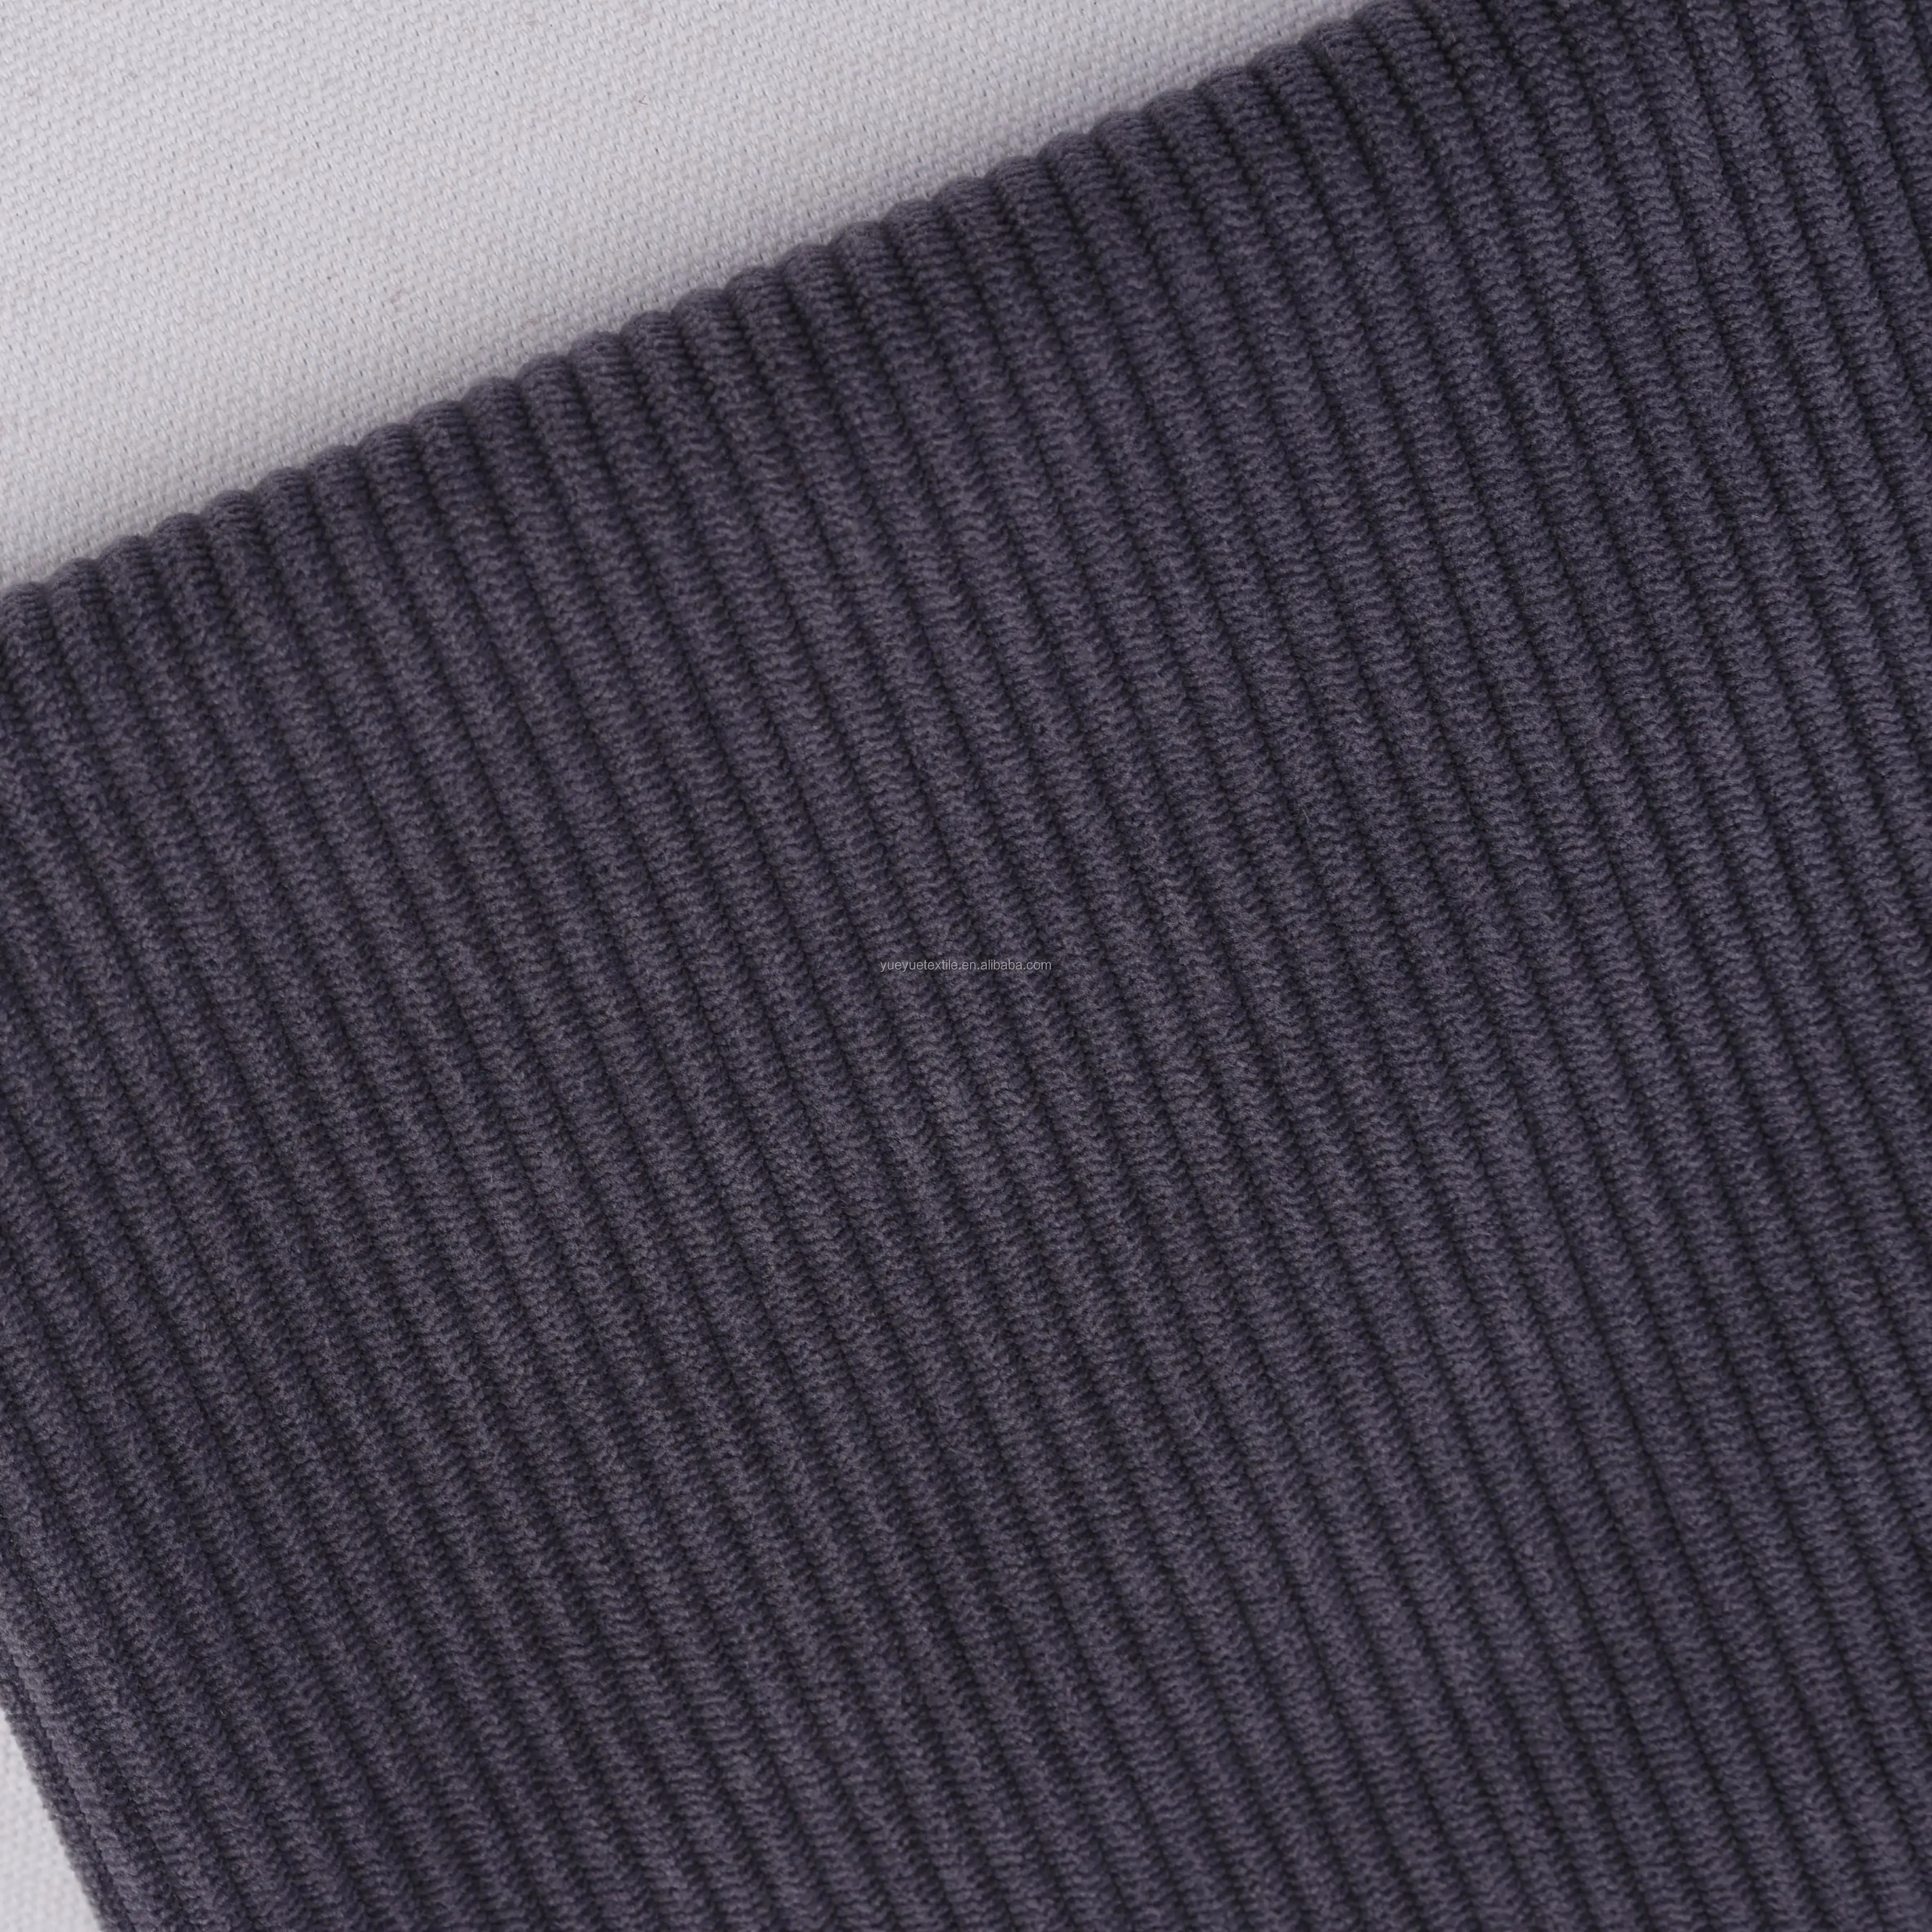 Thiết kế chuyên nghiệp đàn nhung 100% rộng wale may vải to sợi Cổ Phiếu vải